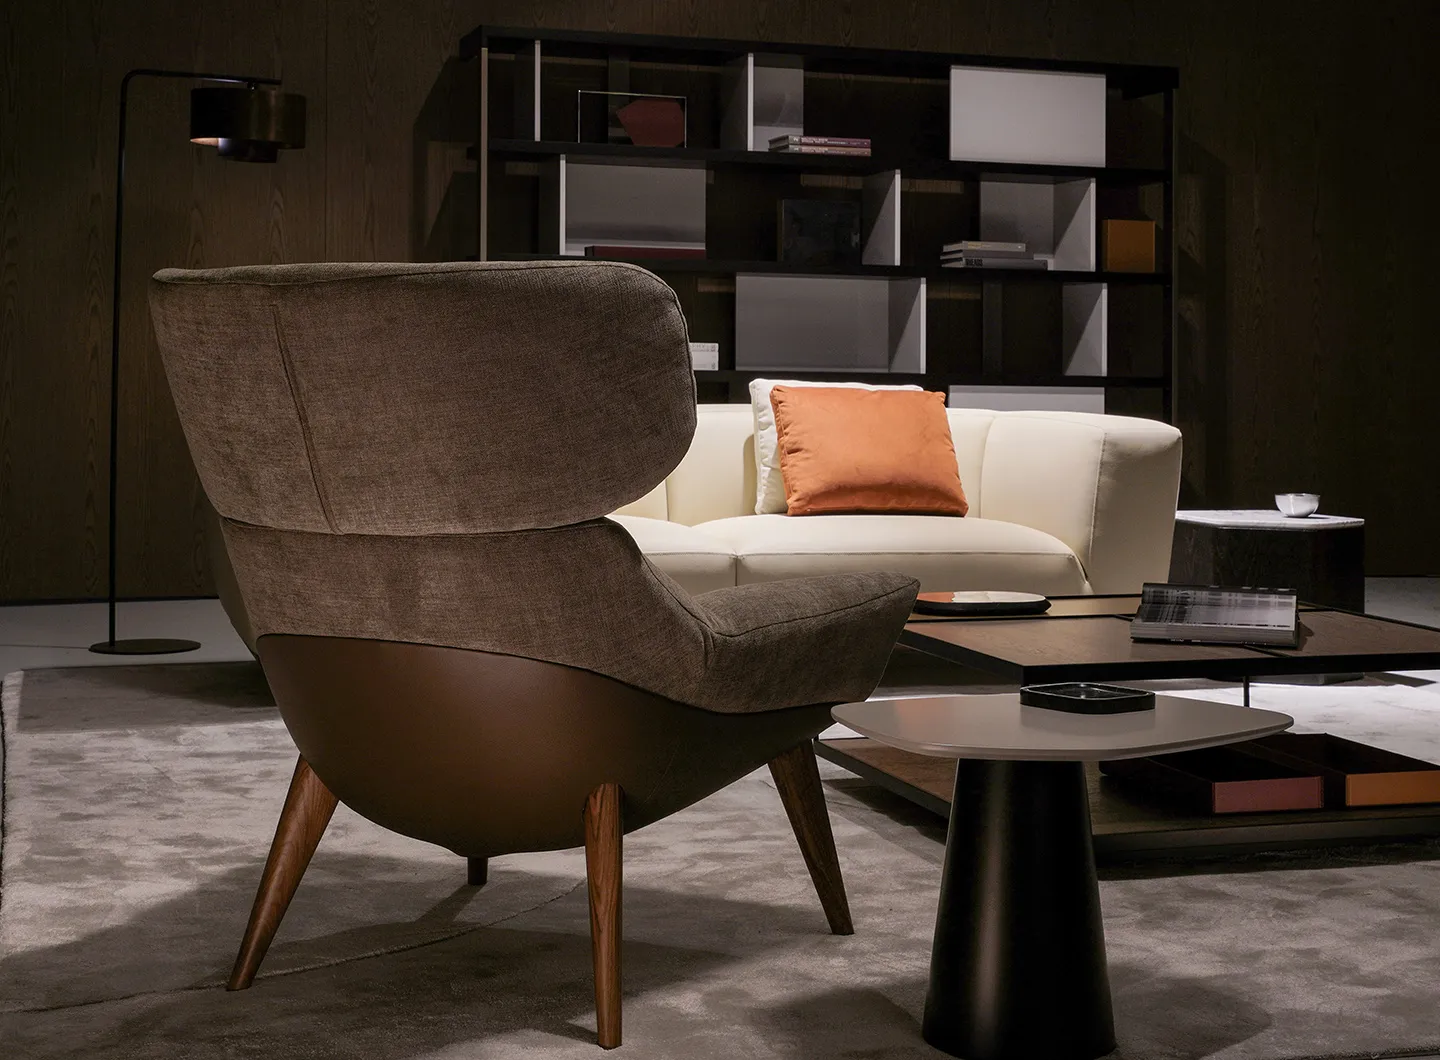 Belfiore, Casa International 'Allover 2021' collection designed by Mauro Lipparini